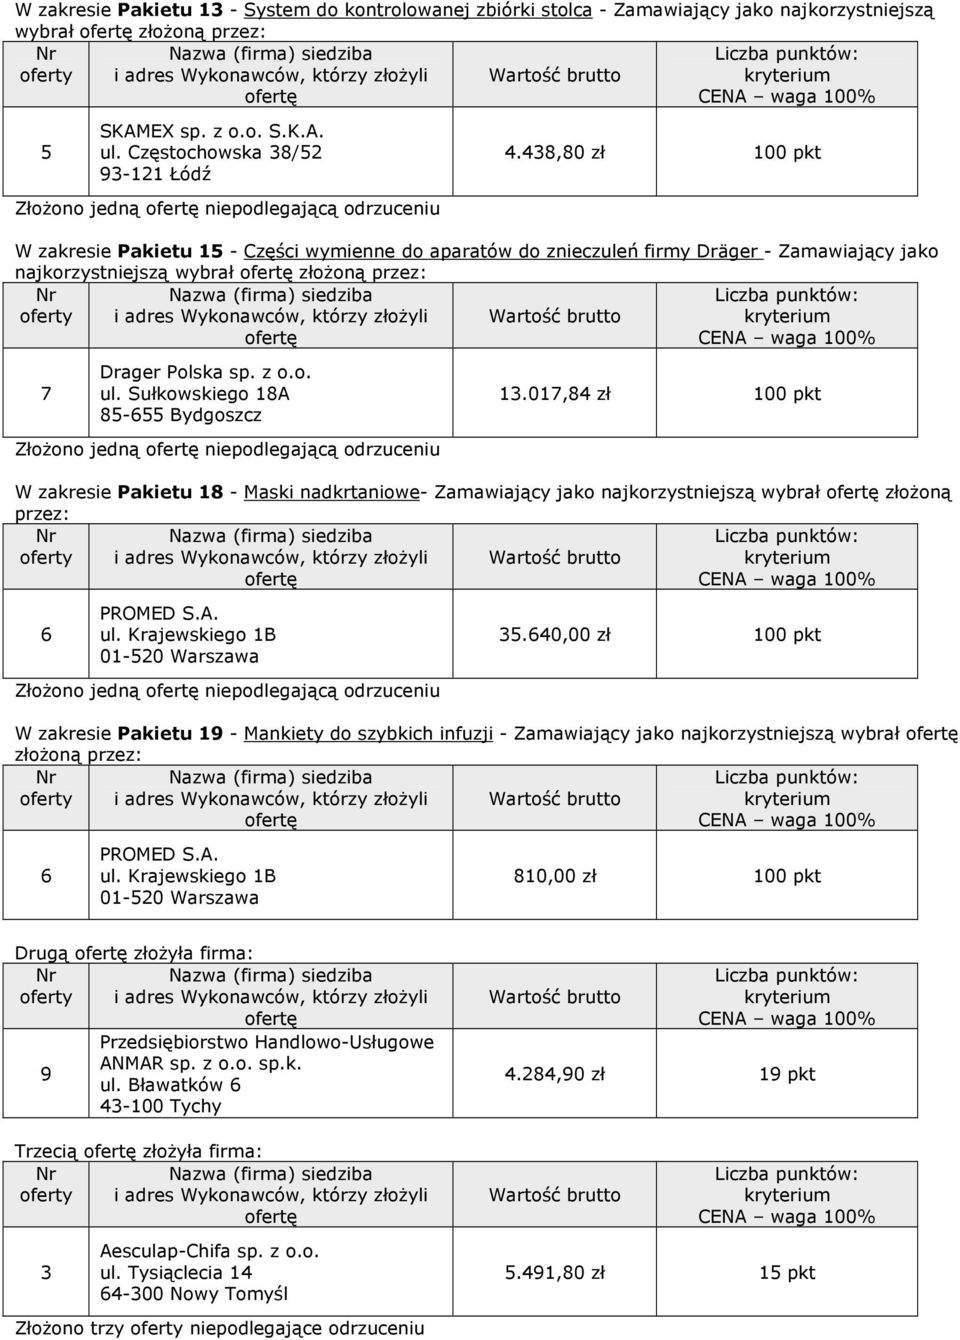 Bydgoszcz Złożono jedną niepodlegającą odrzuceniu 13.01,84 zł 100 pkt W zakresie Pakietu 18 - Maski nadkrtaniowe- Zamawiający jako najkorzystniejszą wybrał złożoną 6 PROMED S.A. ul.